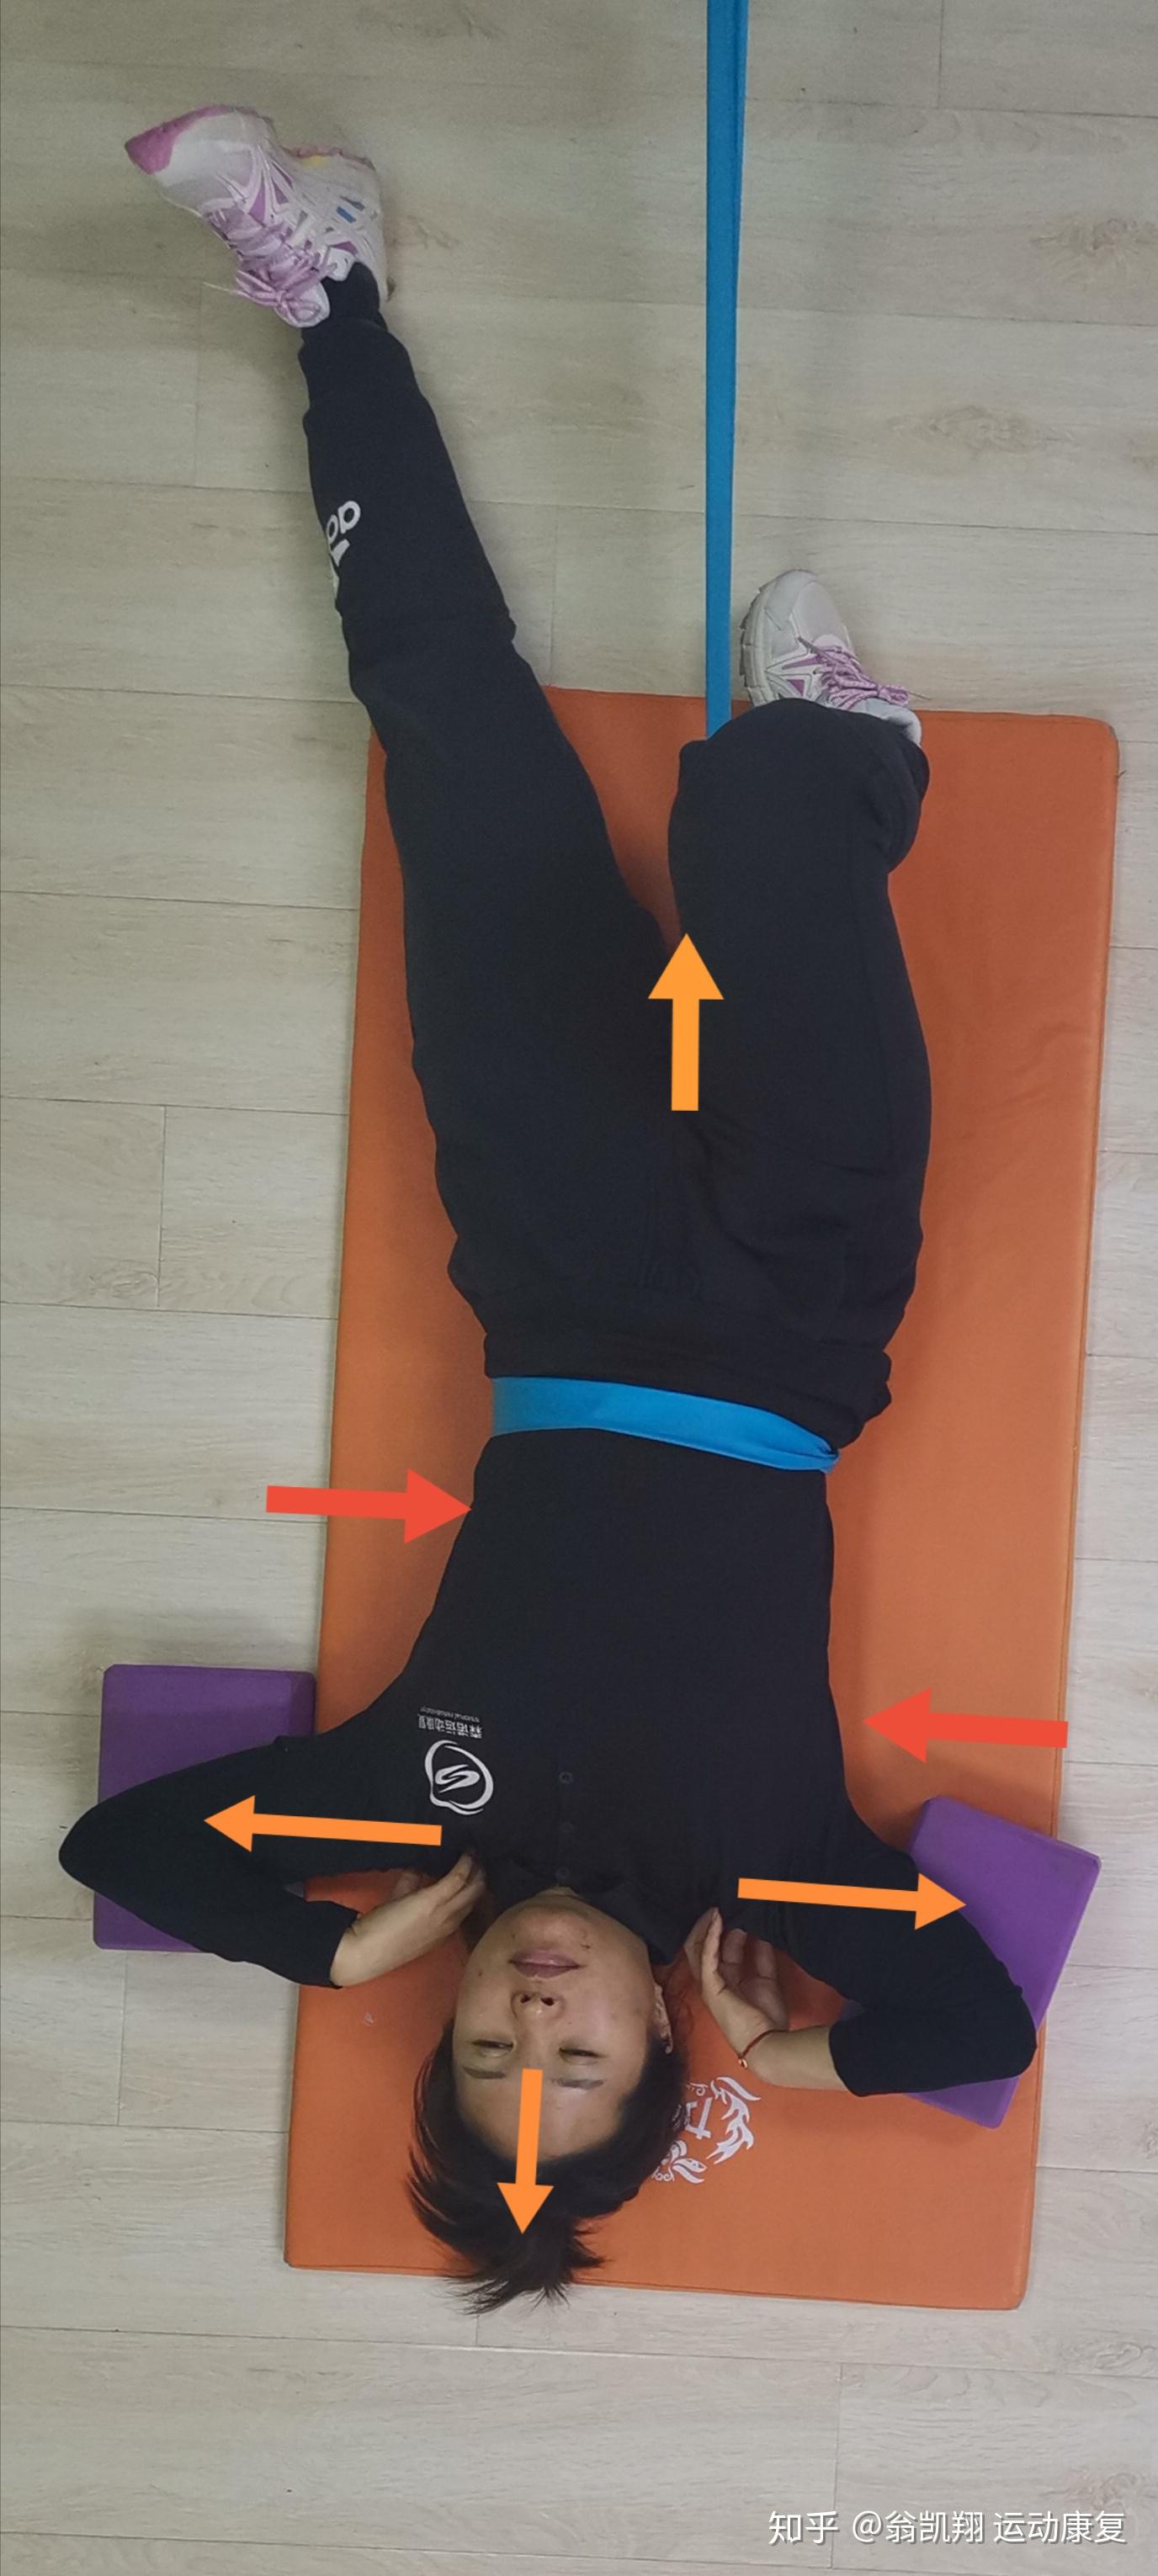 脊柱侧弯侧弯患者躺着就可以进行的垫置物矫正练习